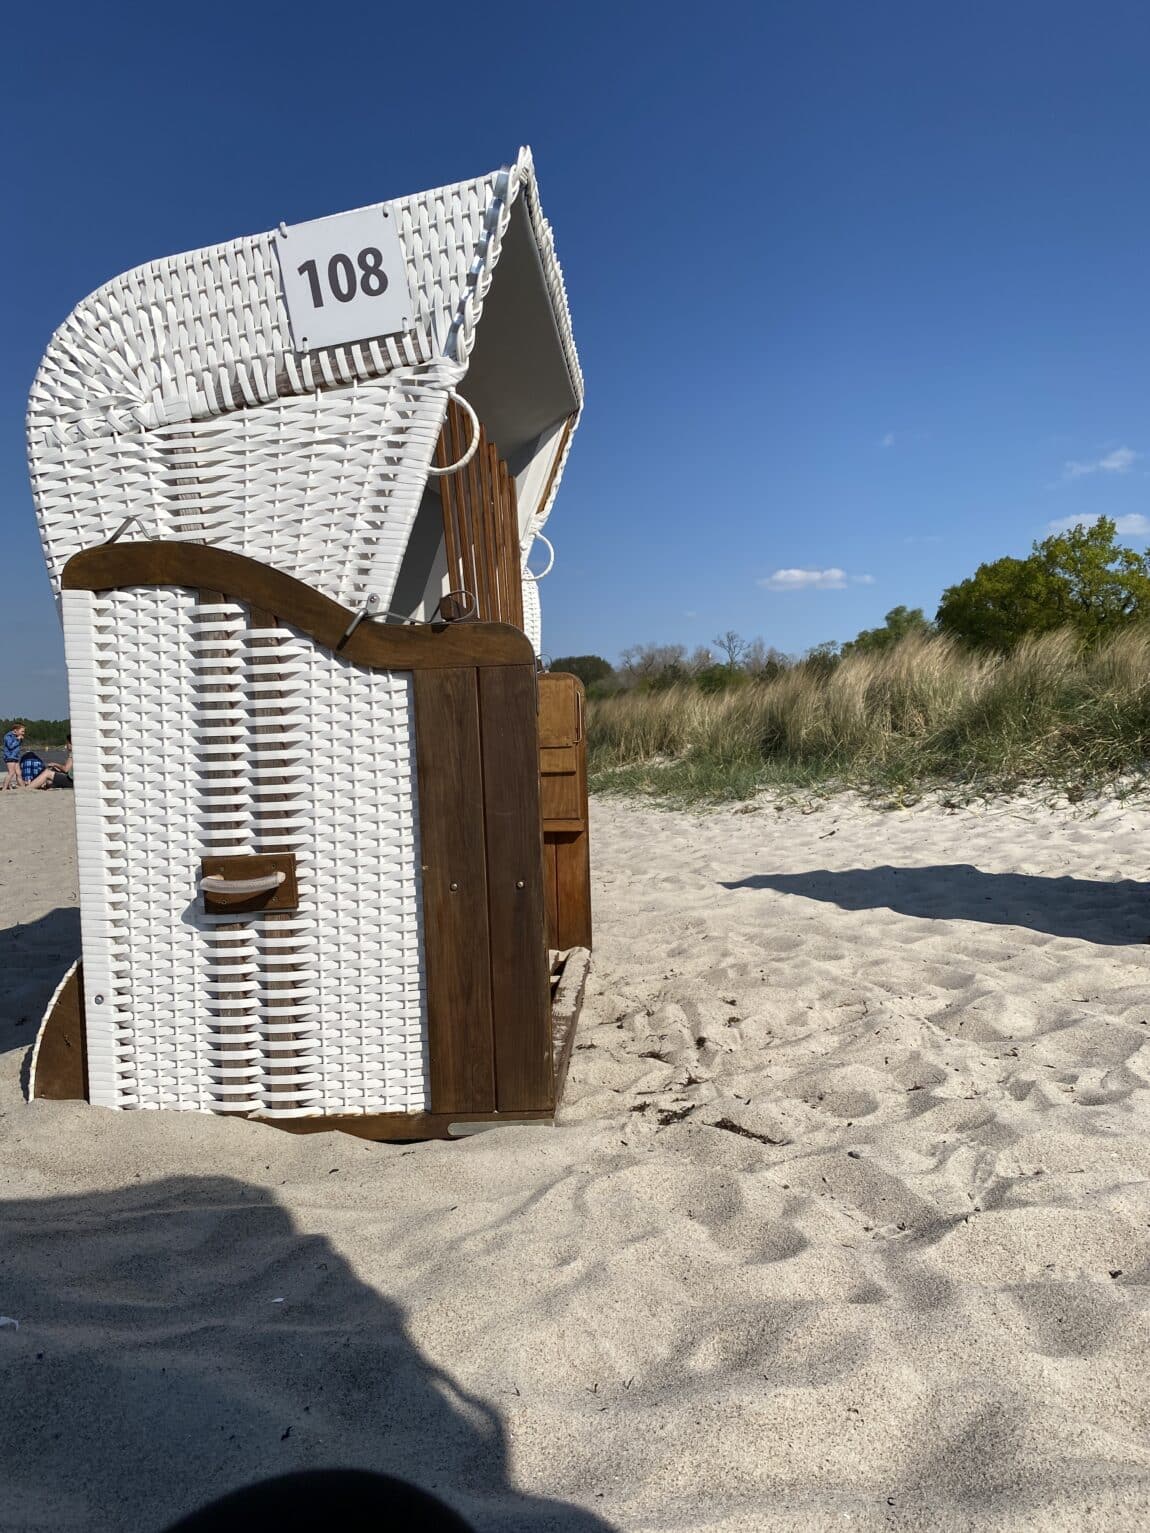 #11 Es ist Strandzeit für mich. Da es windig ist, habe ich eher mehr angezogen und versuche im Windschatten zu sitzen..